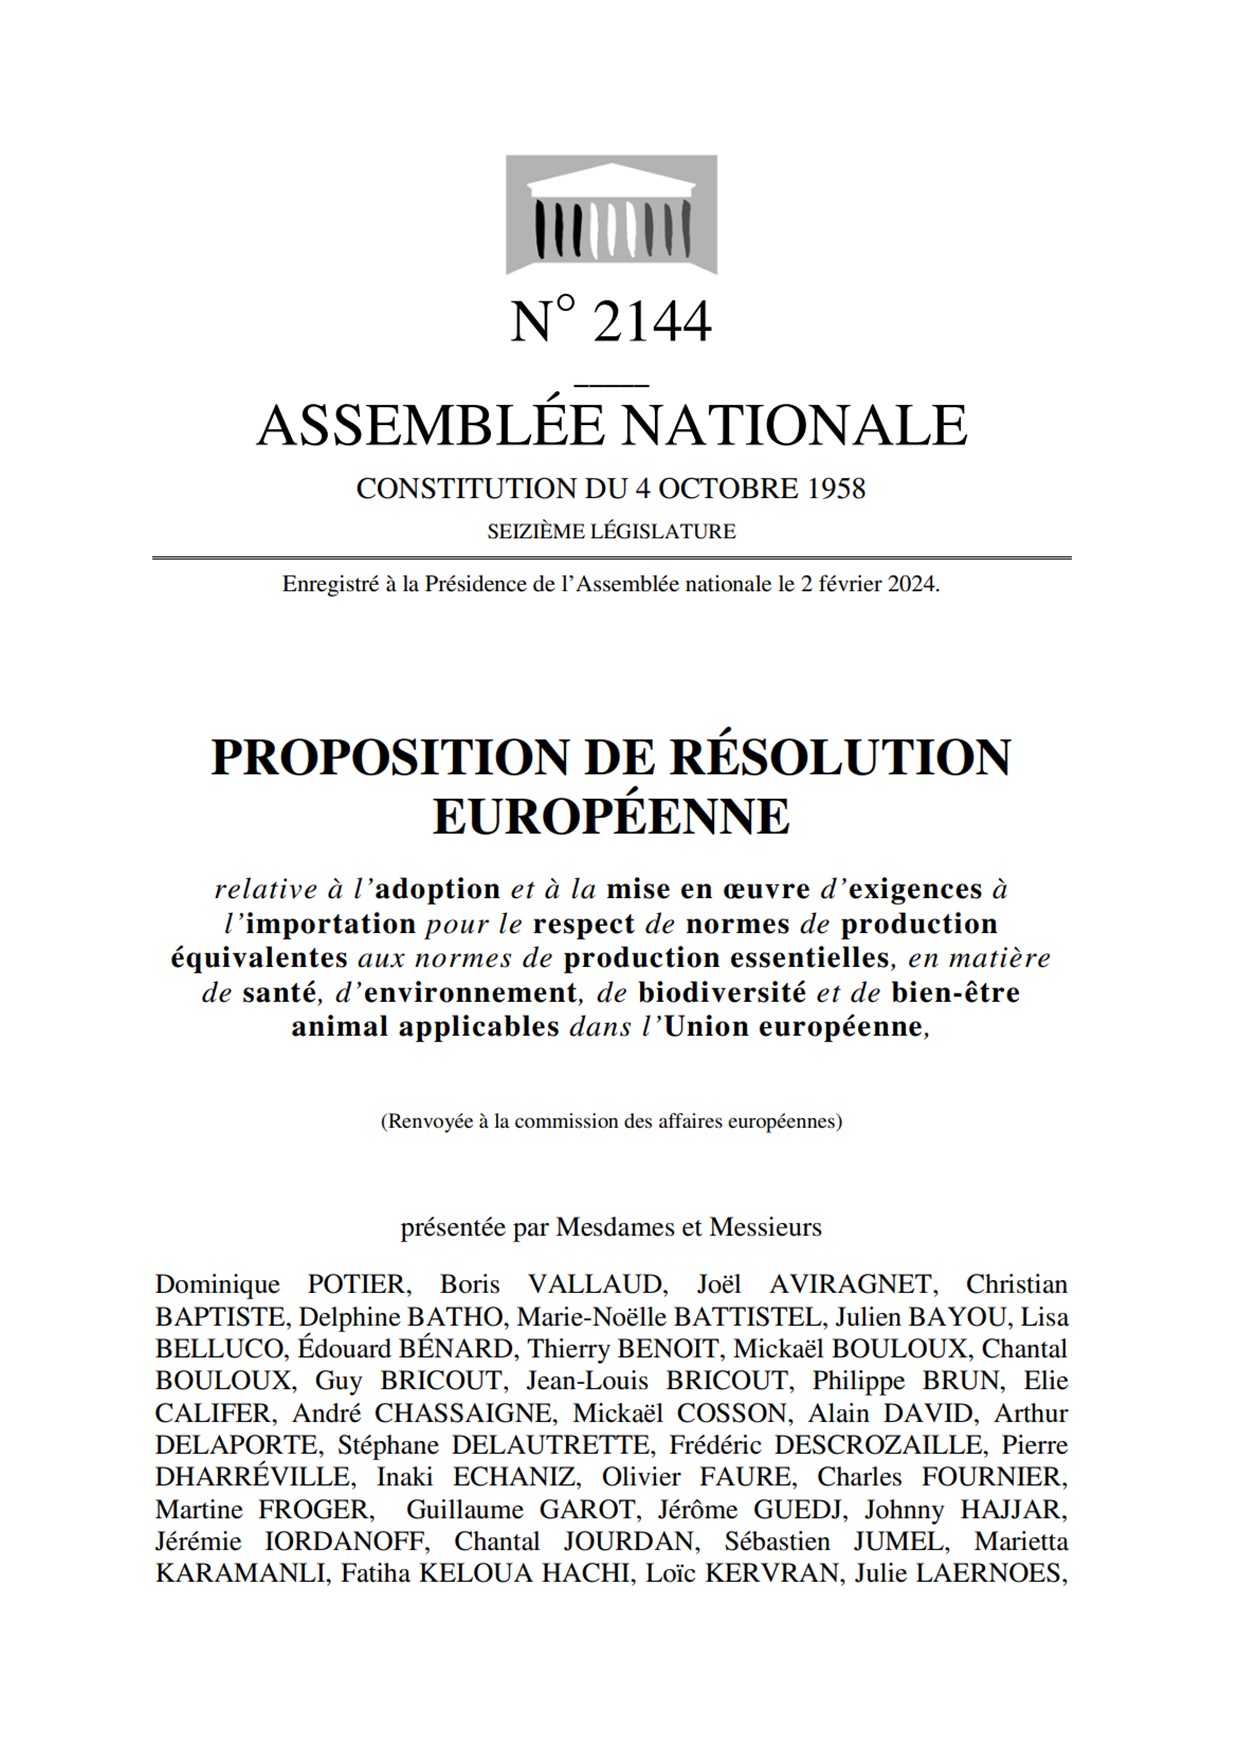 Résolution Européenne normes de production